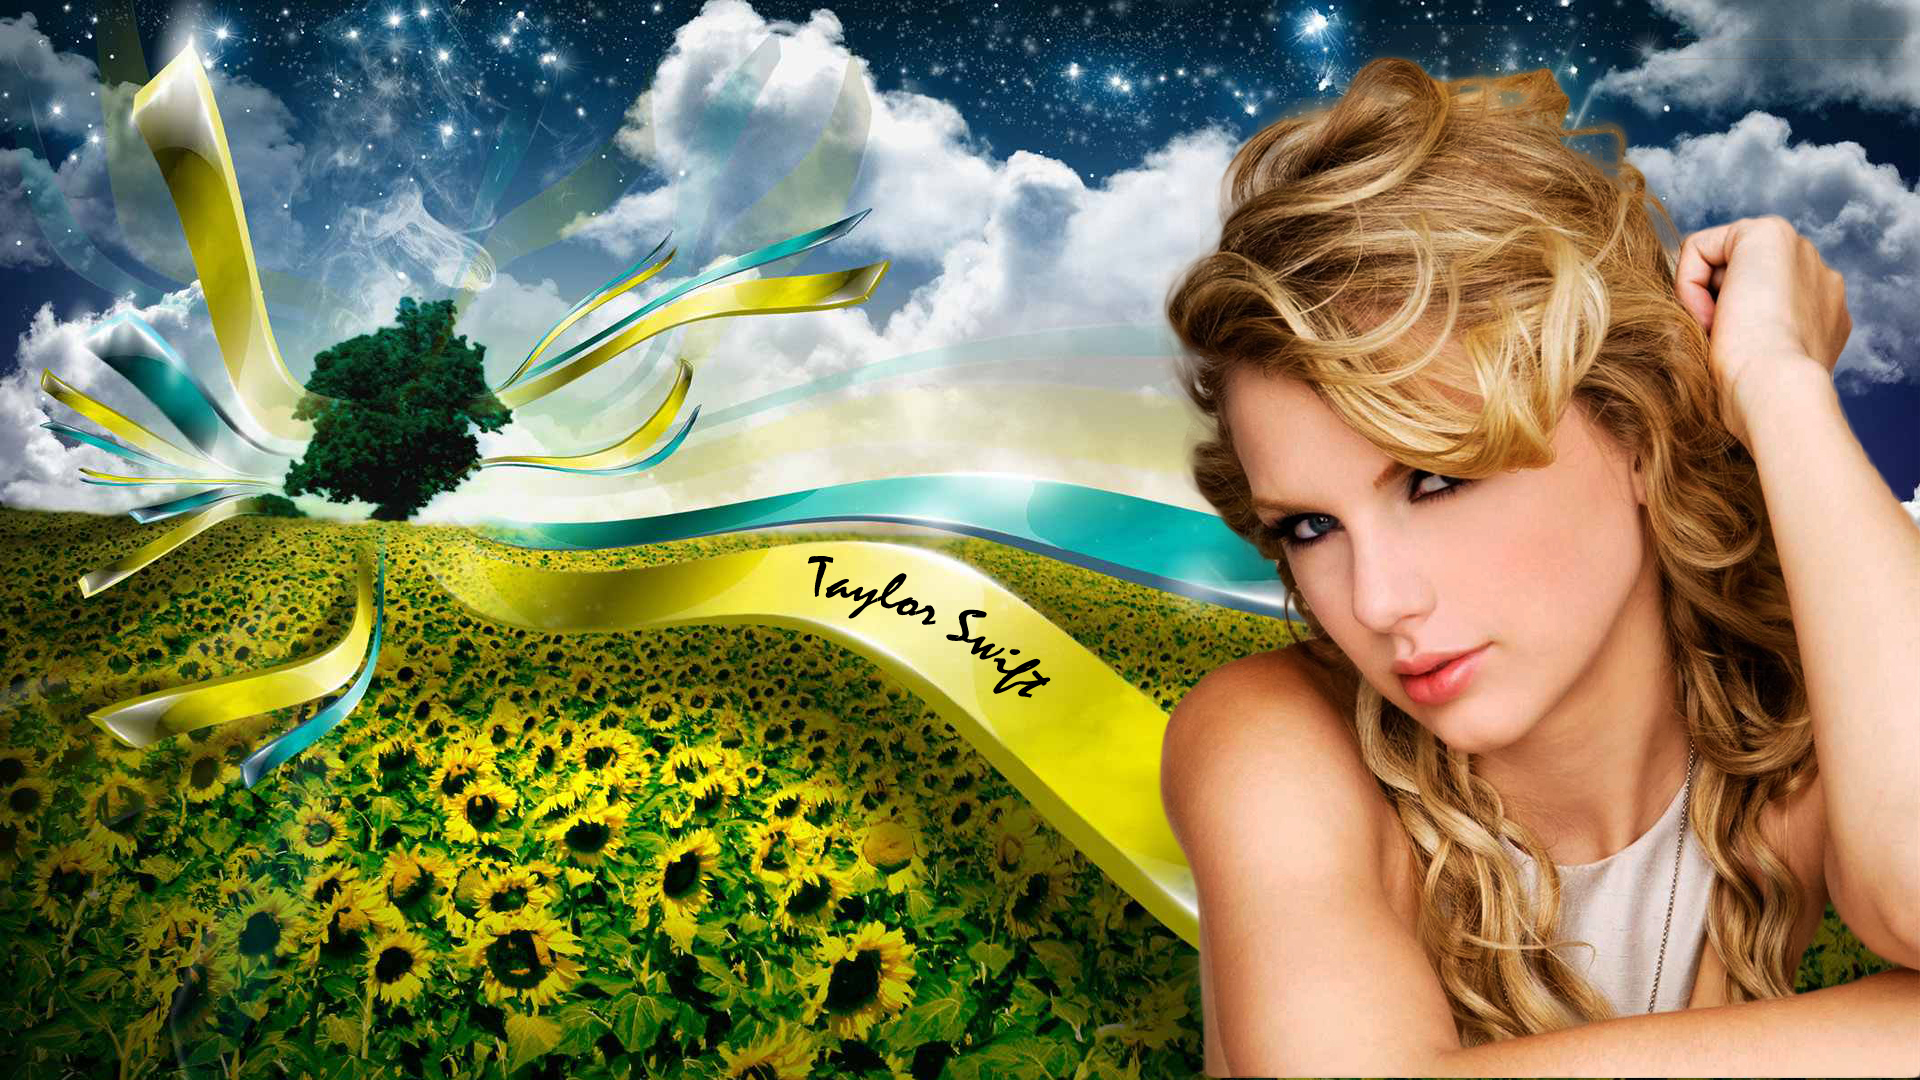 Taylor Swift Wallpaper Desktop Taylor Swift Desktop